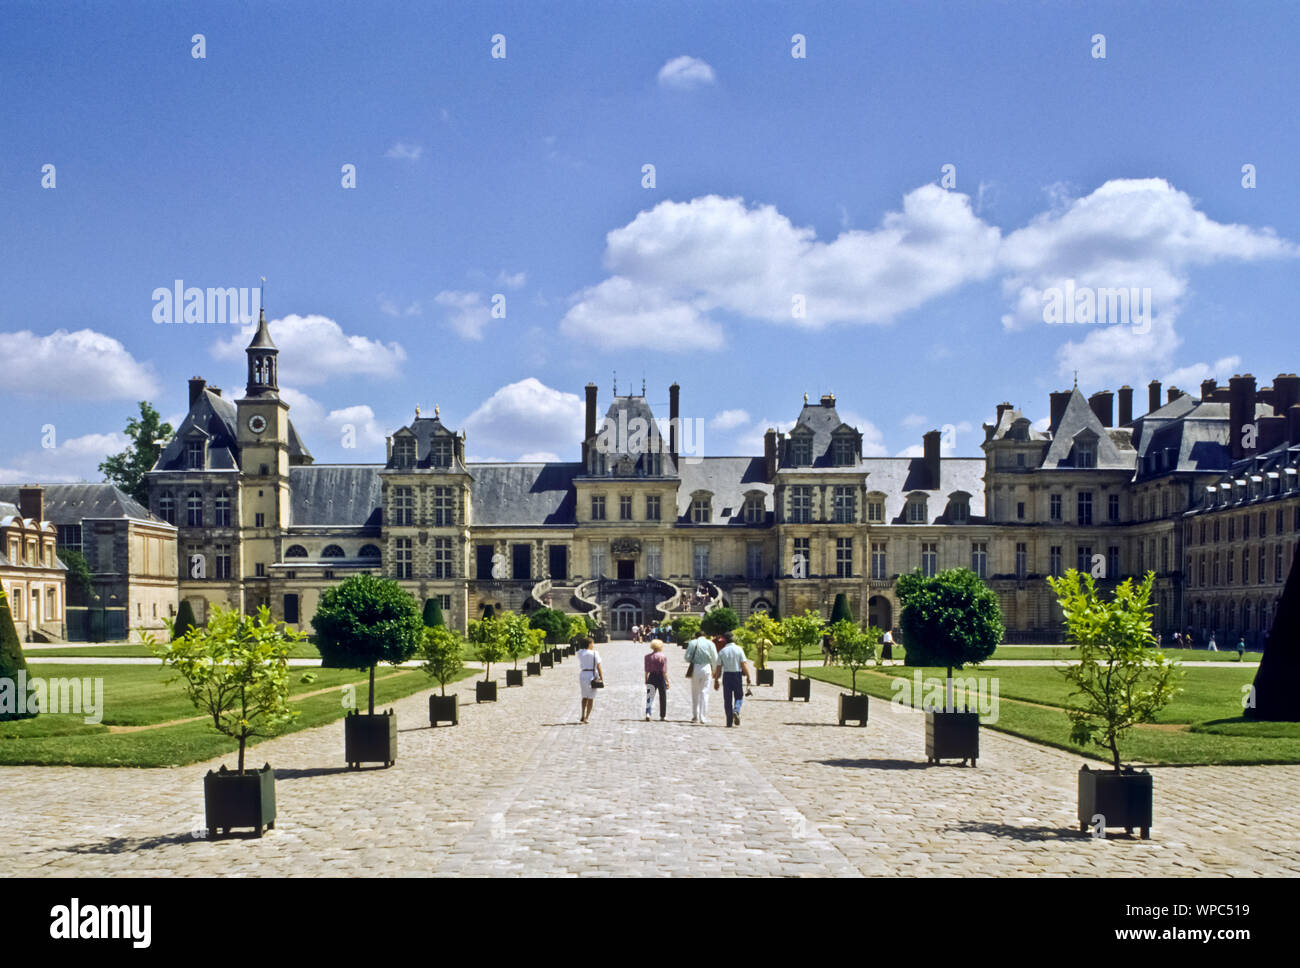 Das Schloss Fontainebleau in Fontainebleau, Département Seine-et-Marne, ist ein französisches Schloss rund 60 km südlich von Paris, das zeitweilig unt Stock Photo